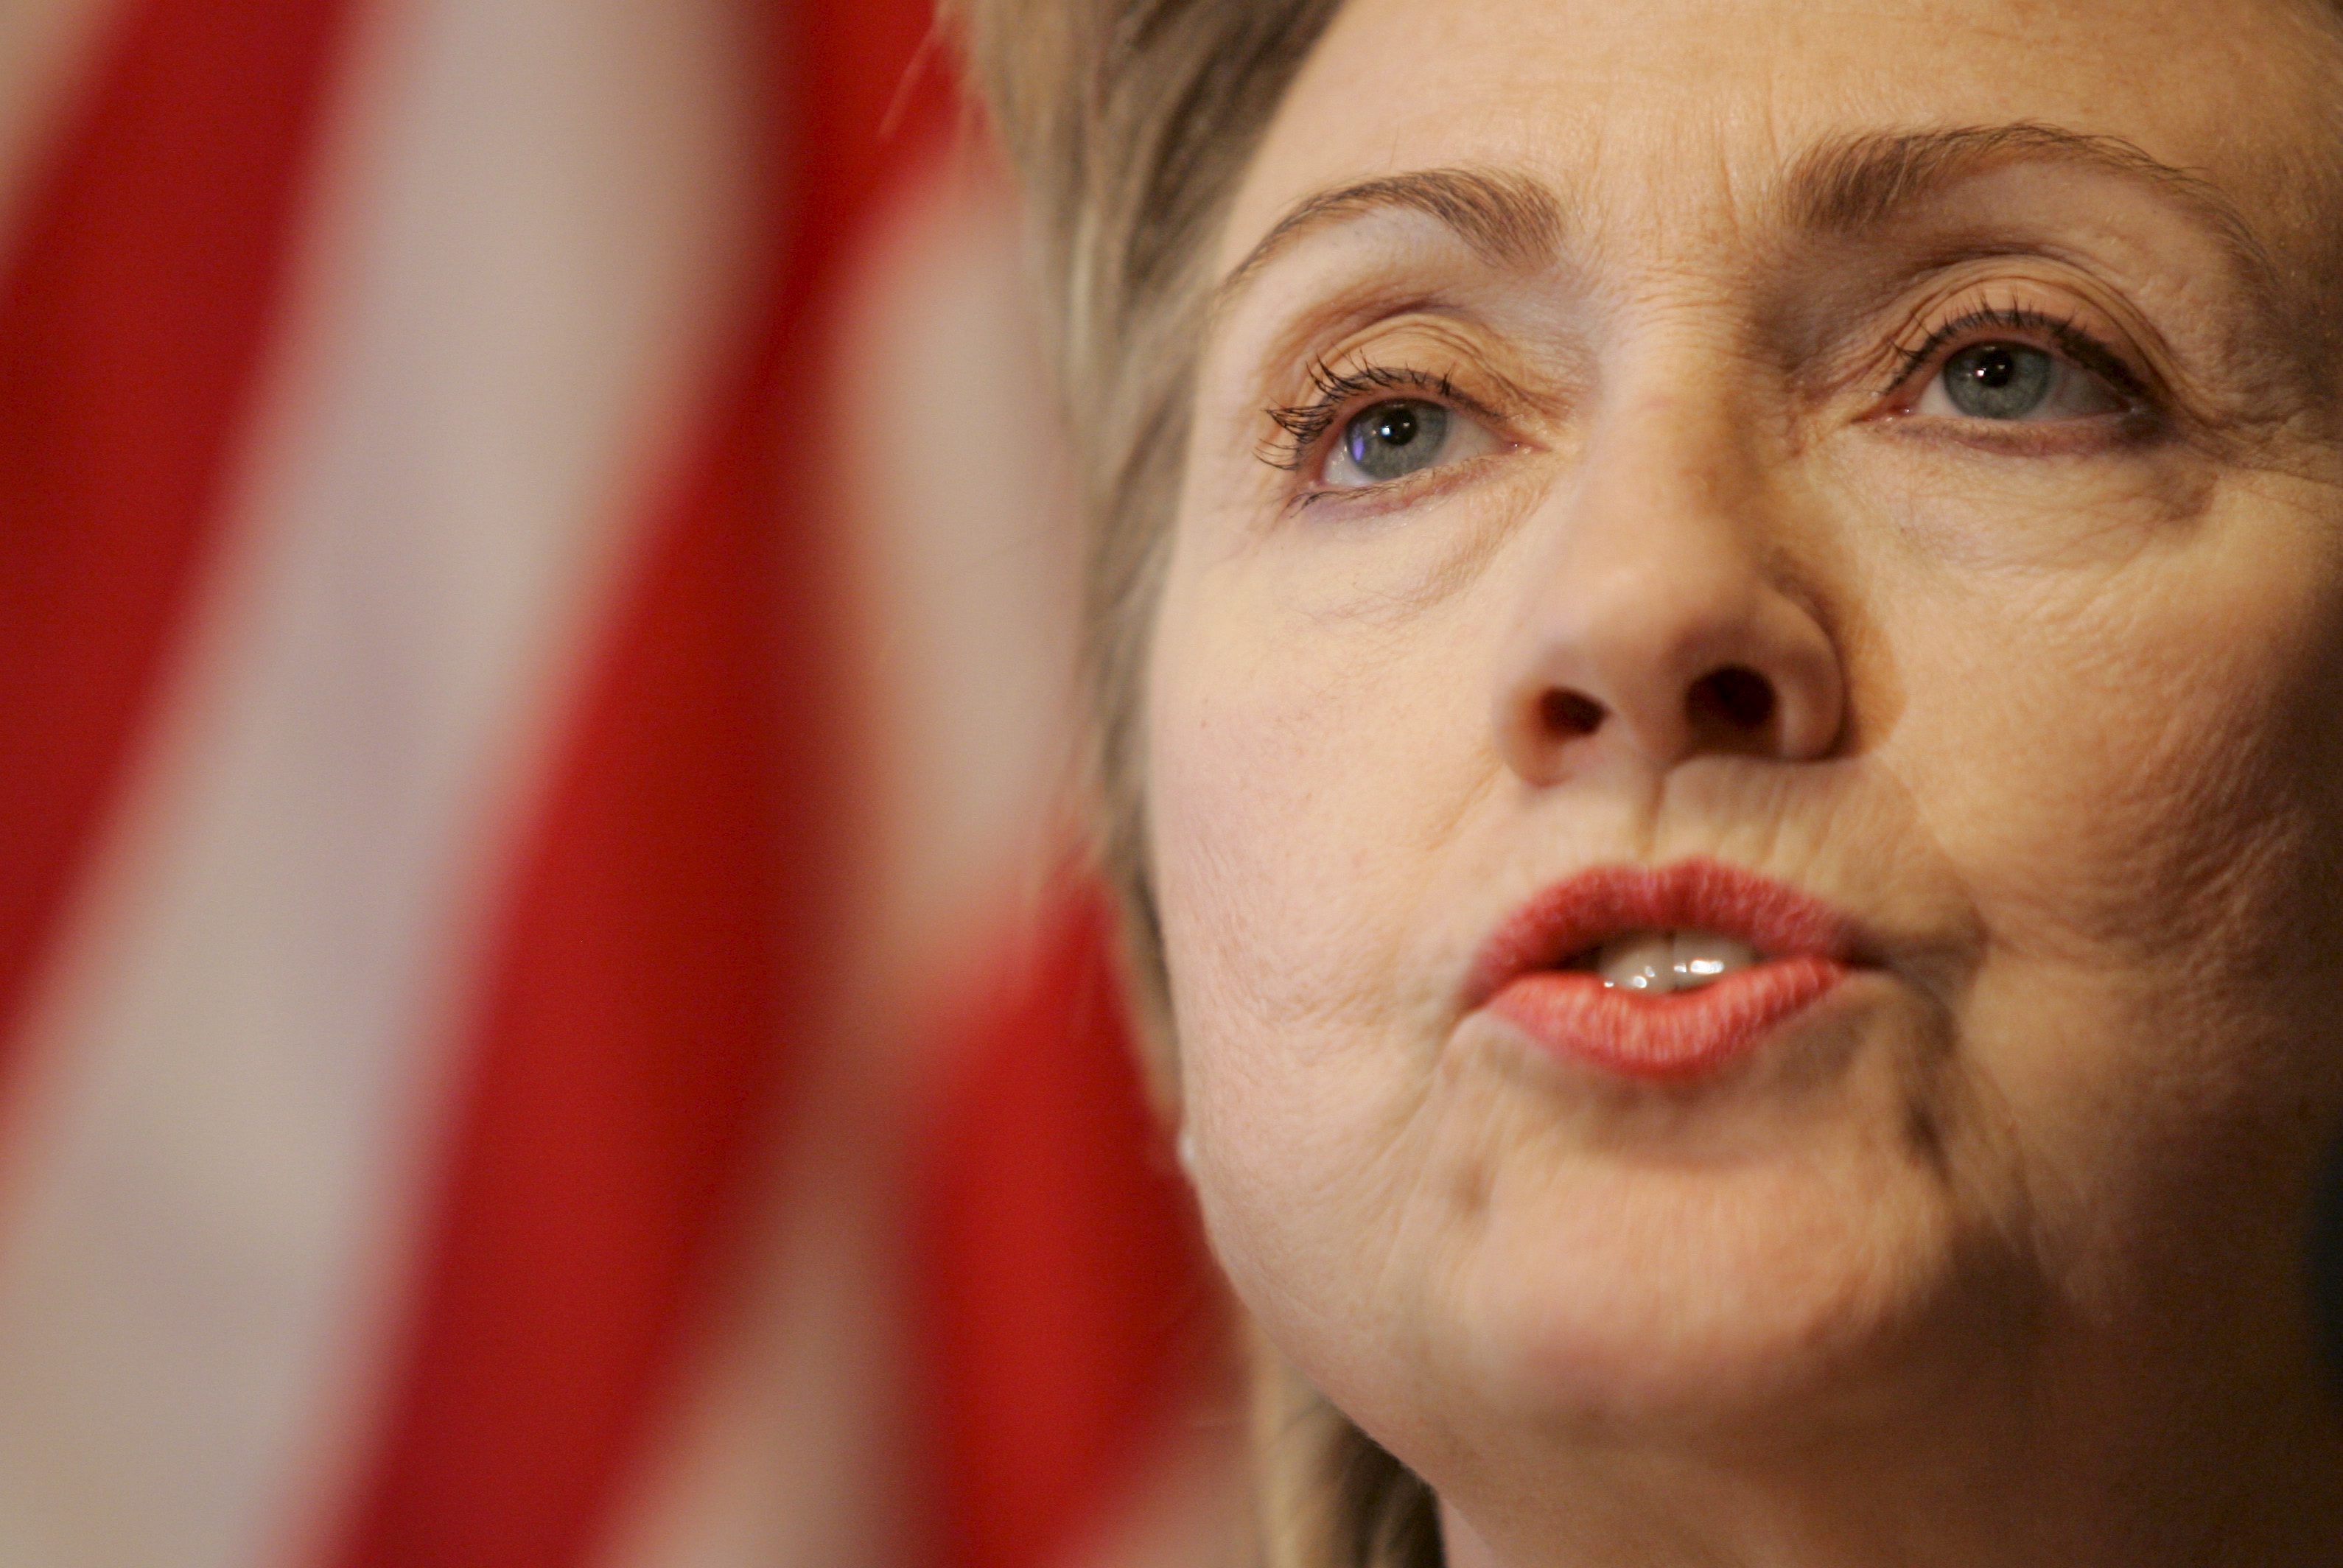 Según The Washington Post, Clinton pagó a funcionario para mantener polémico correo privado